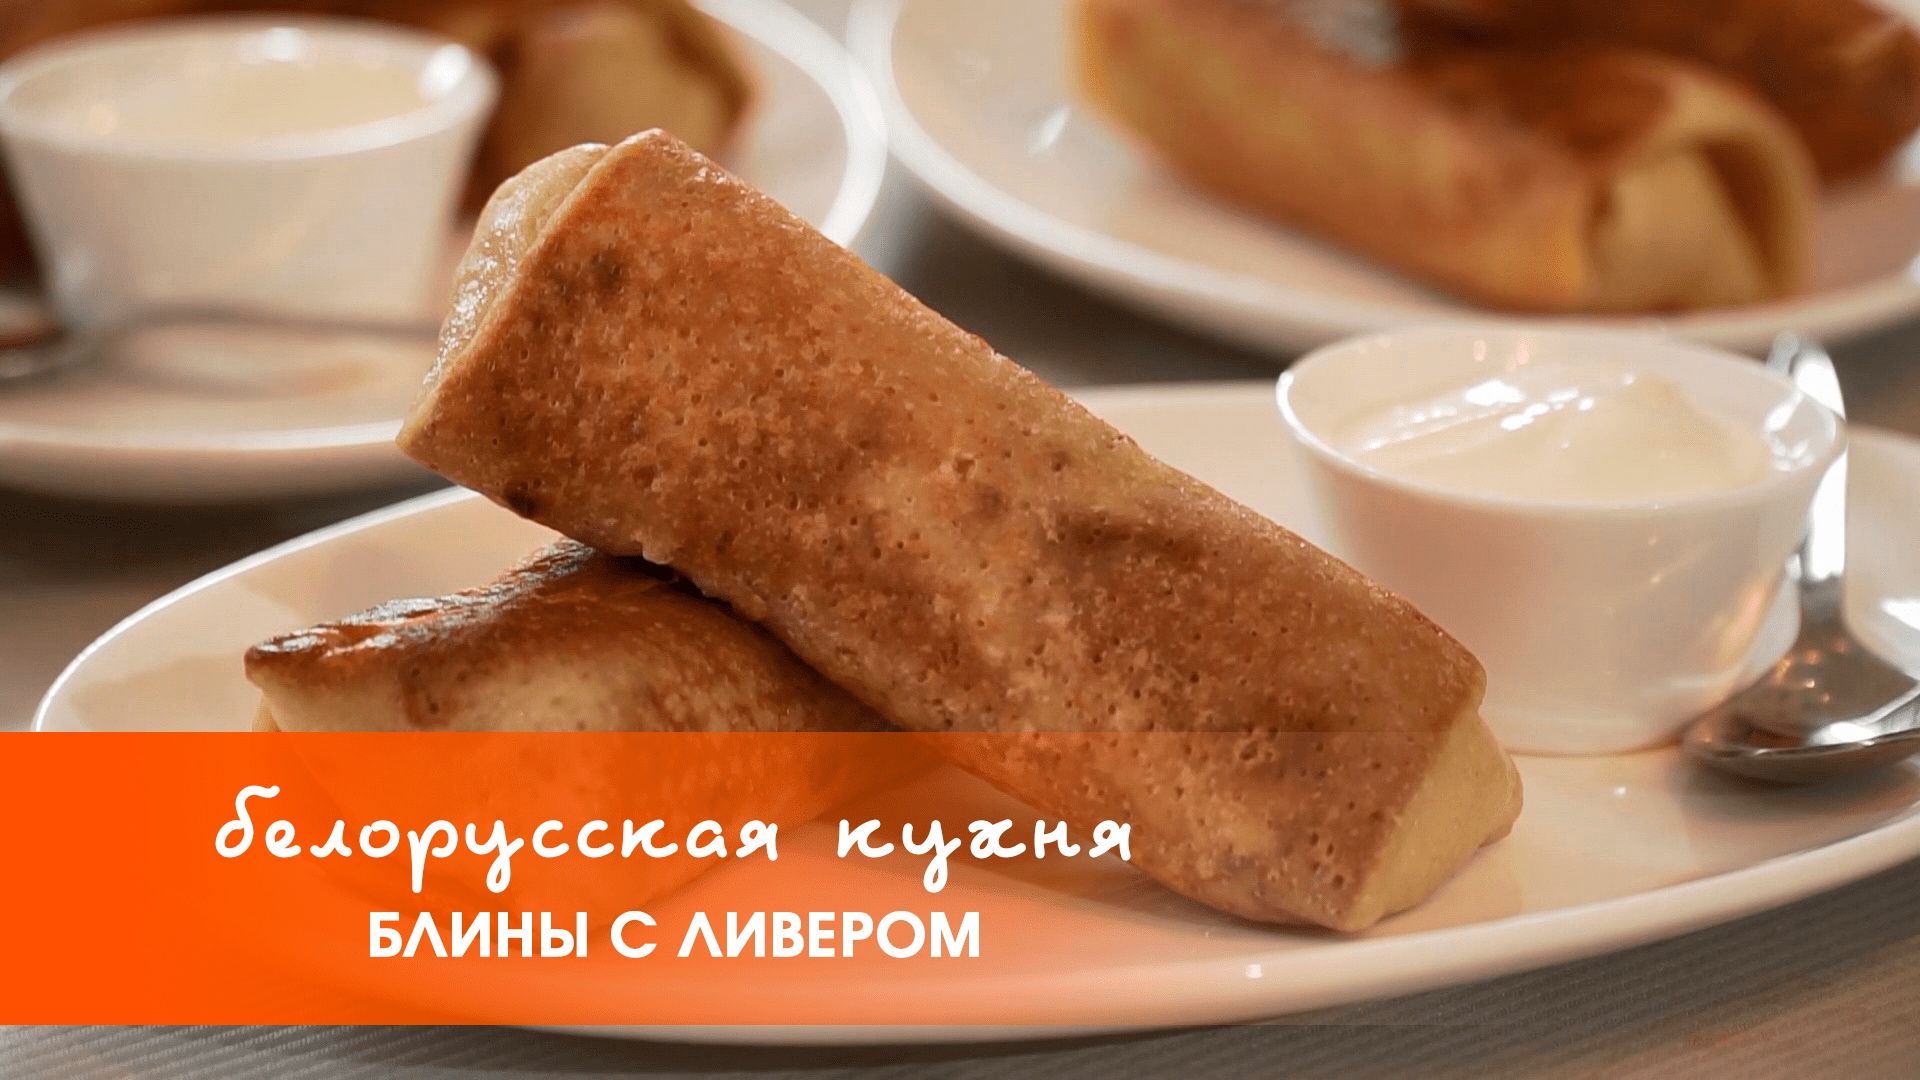 Белорусская кухня: блины с ливером